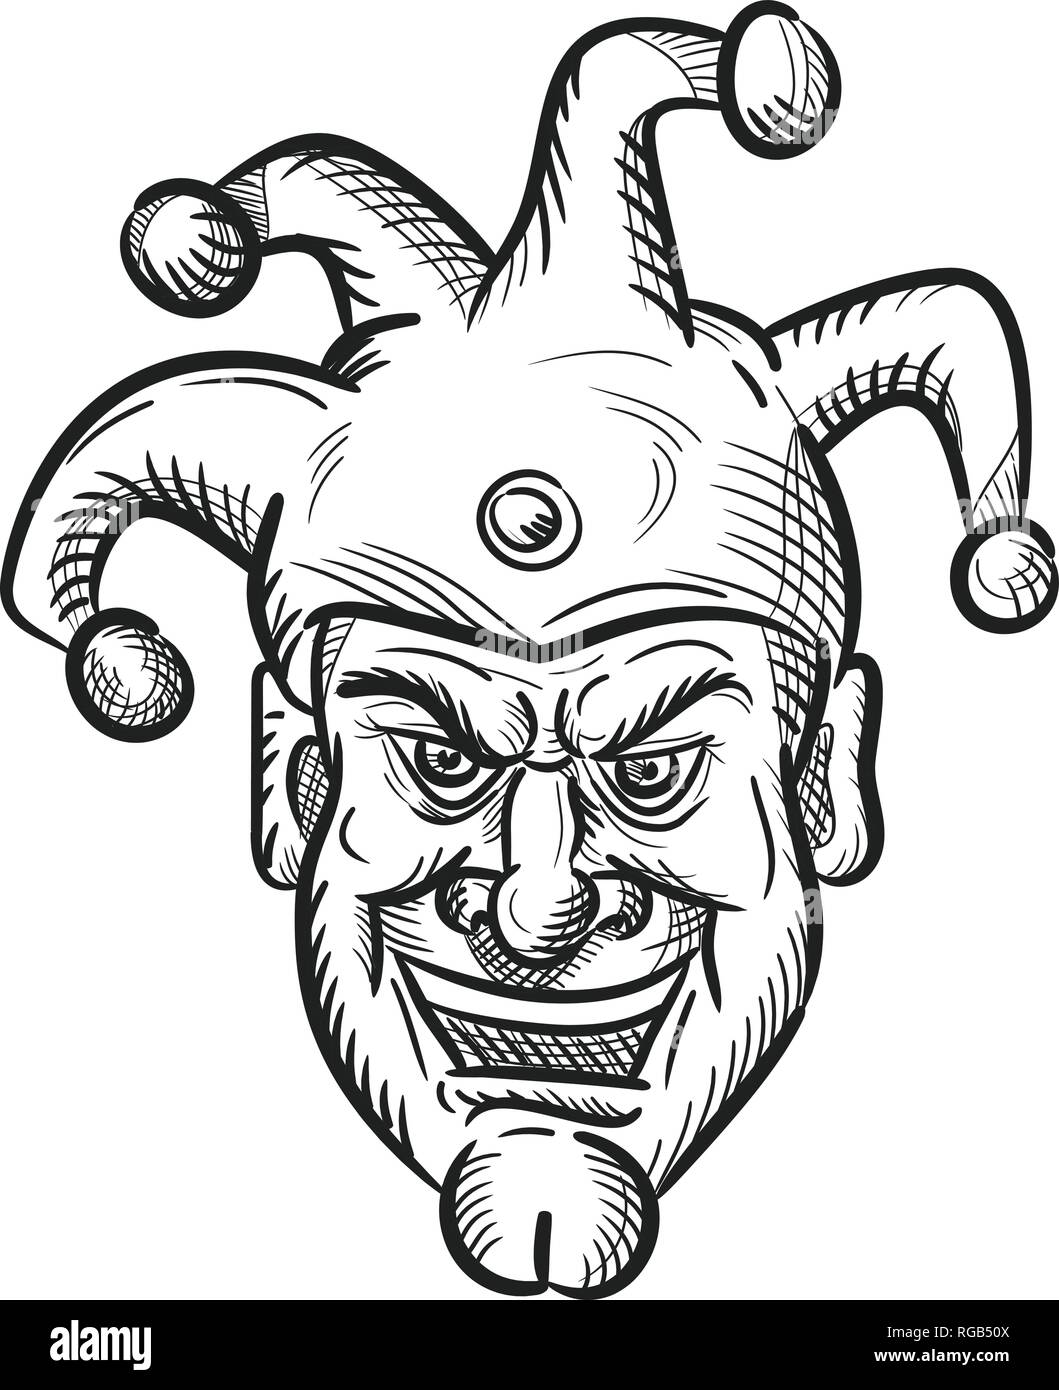 Croquis dessin illustration style de tête d'une cité médiévale fou fou, arlequin ou fou avec un sourire stupide sourire sarcastique ou isolé sur blanc b Illustration de Vecteur